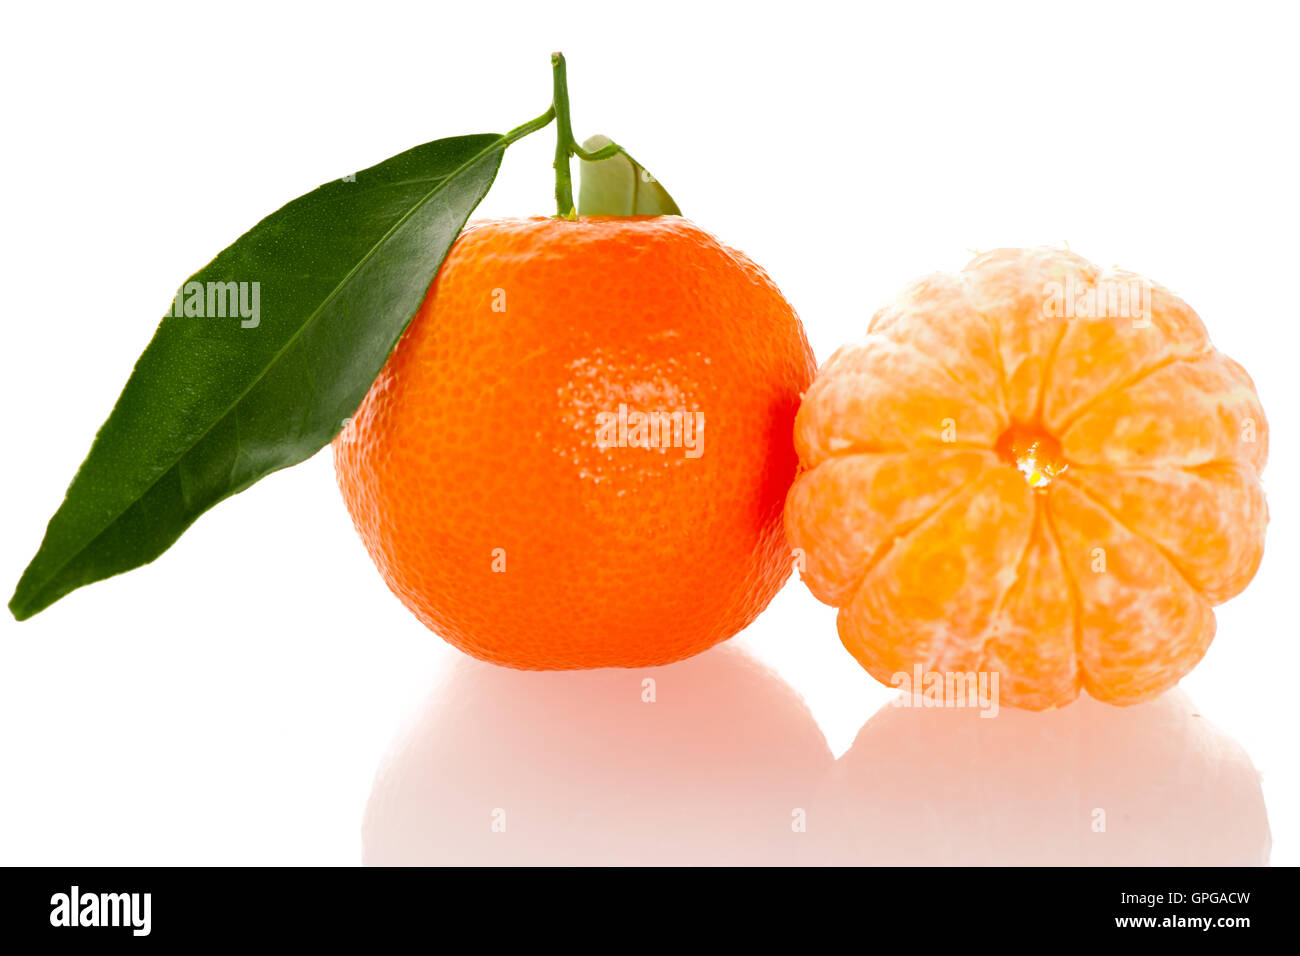 Agrumes mandarin orange fraîches non pelées avec feuilles vertes et la moitié des tranches de fruits pelés isolated over white background. Tasty swe Banque D'Images